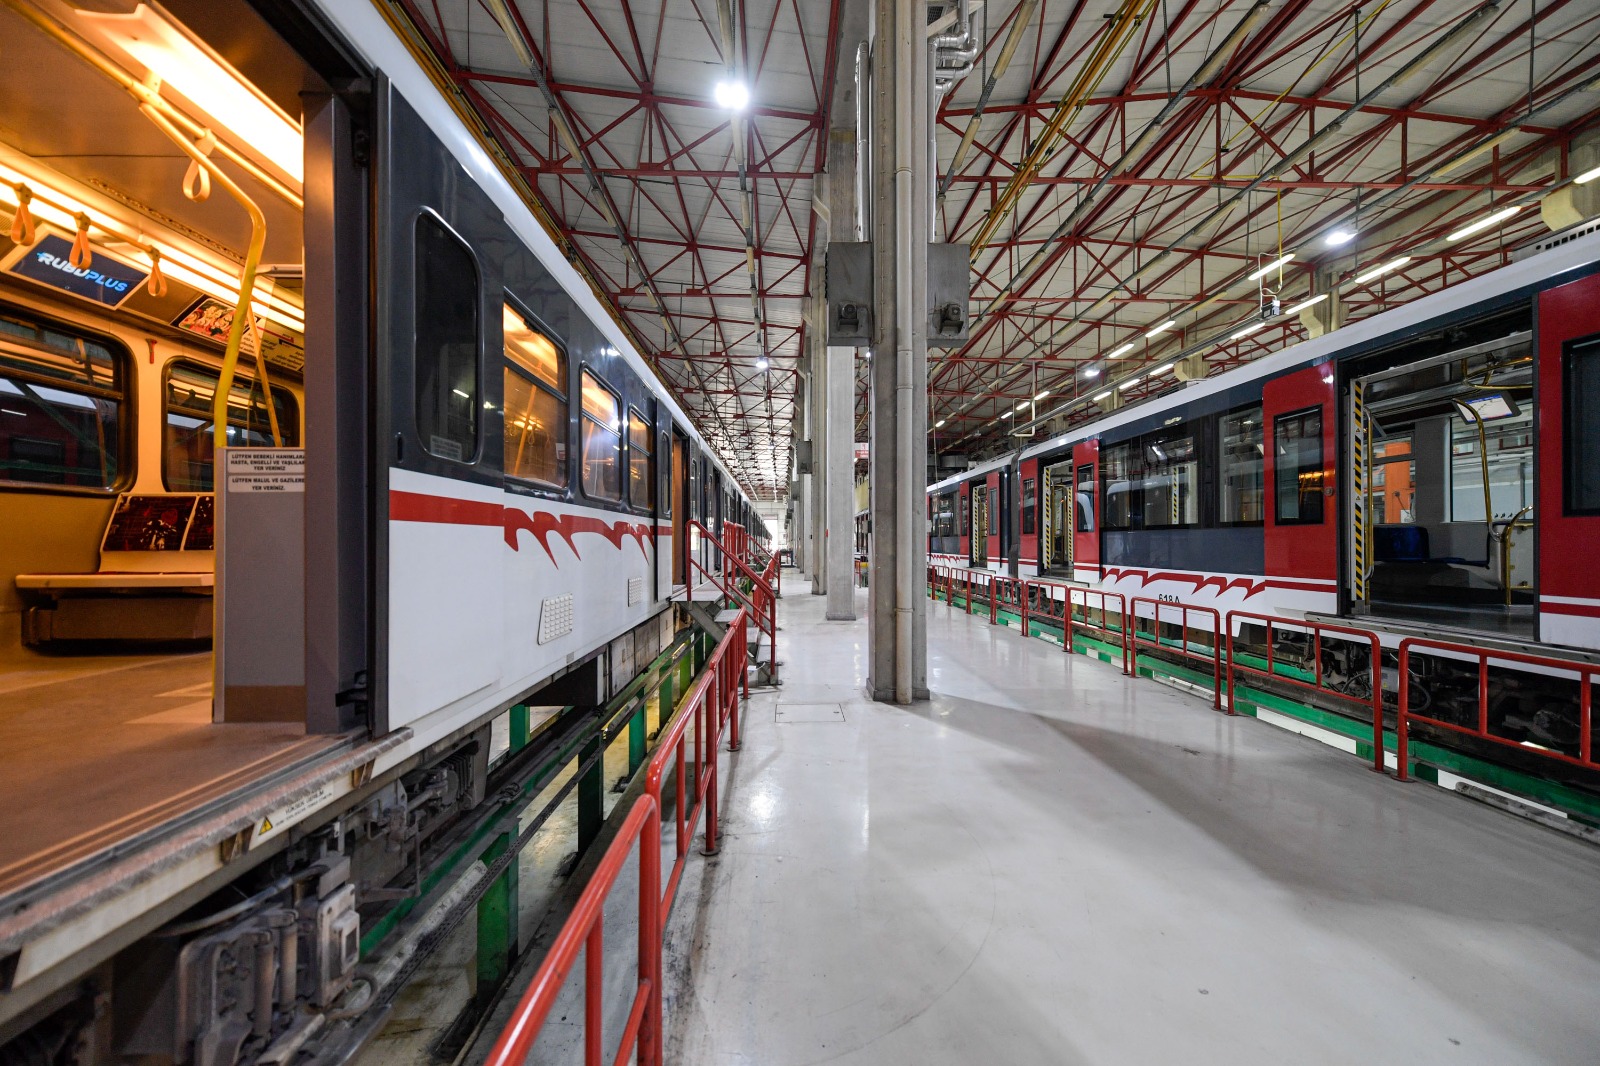 İzmir Metro AŞ’den 124 milyon liralık tasarruf